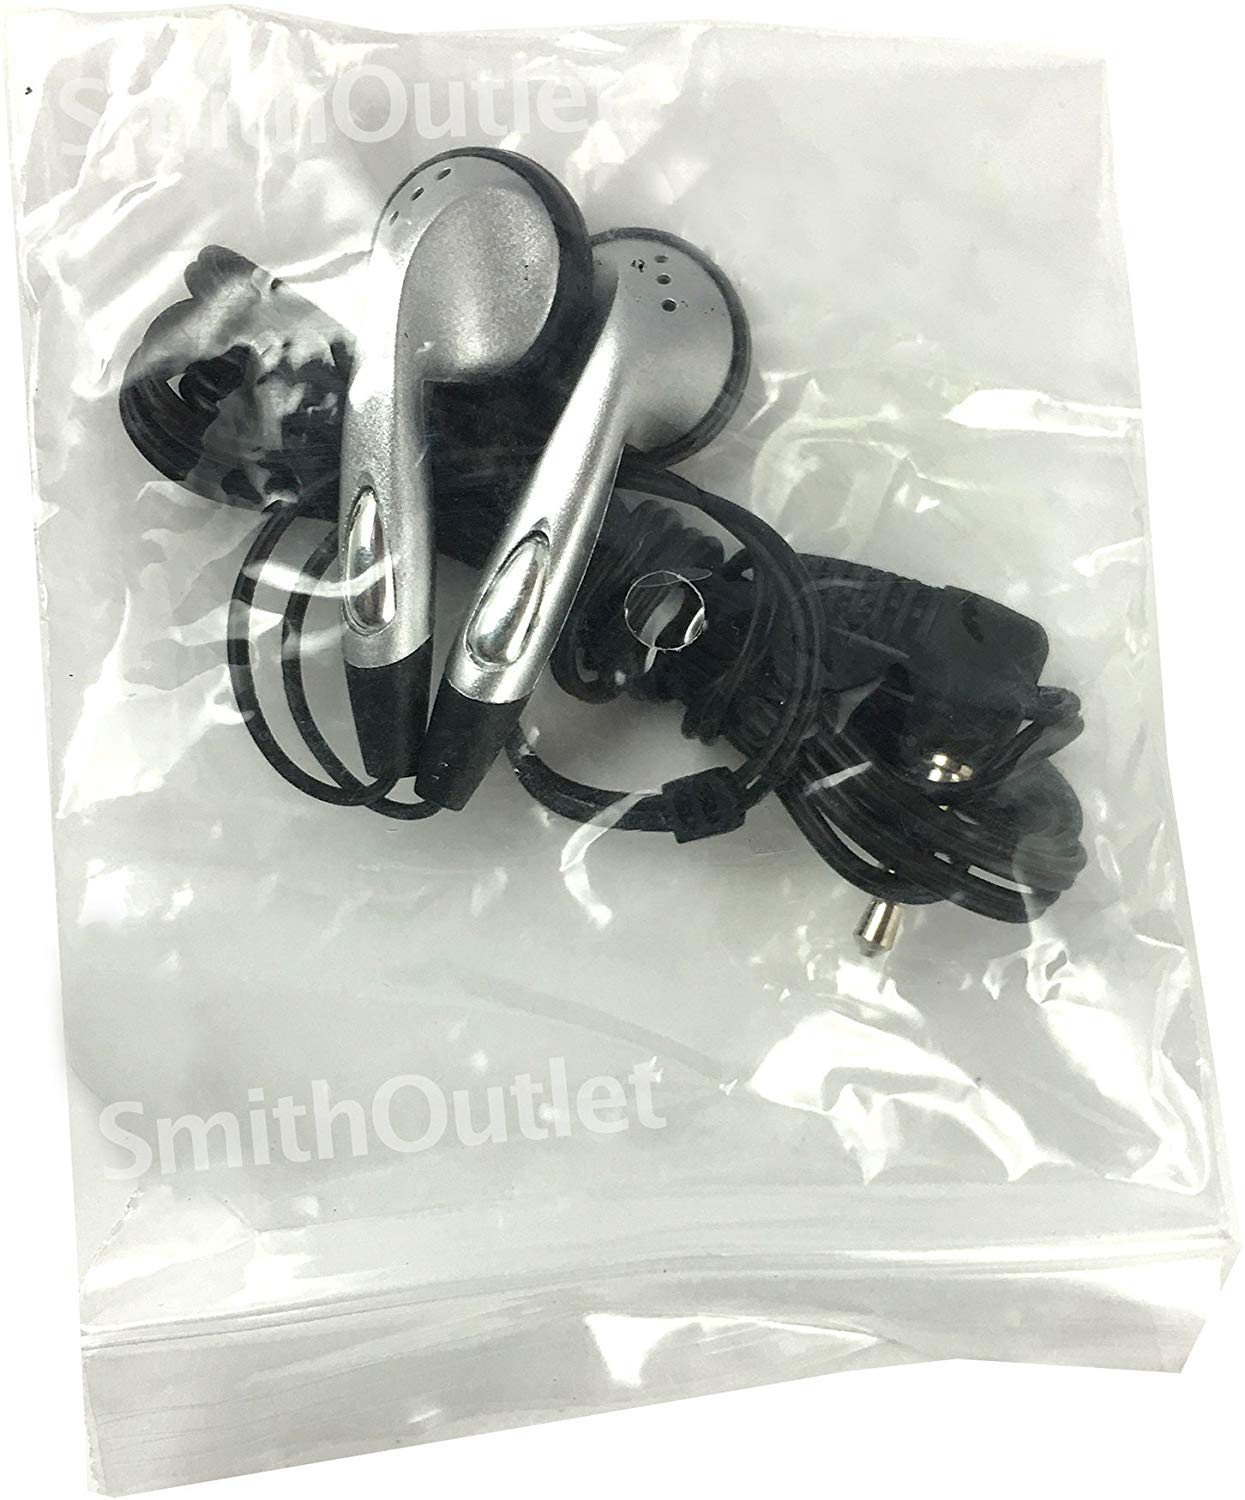 SmithOutlet 200 Pack in-Ear Bulk Earphones in Silver